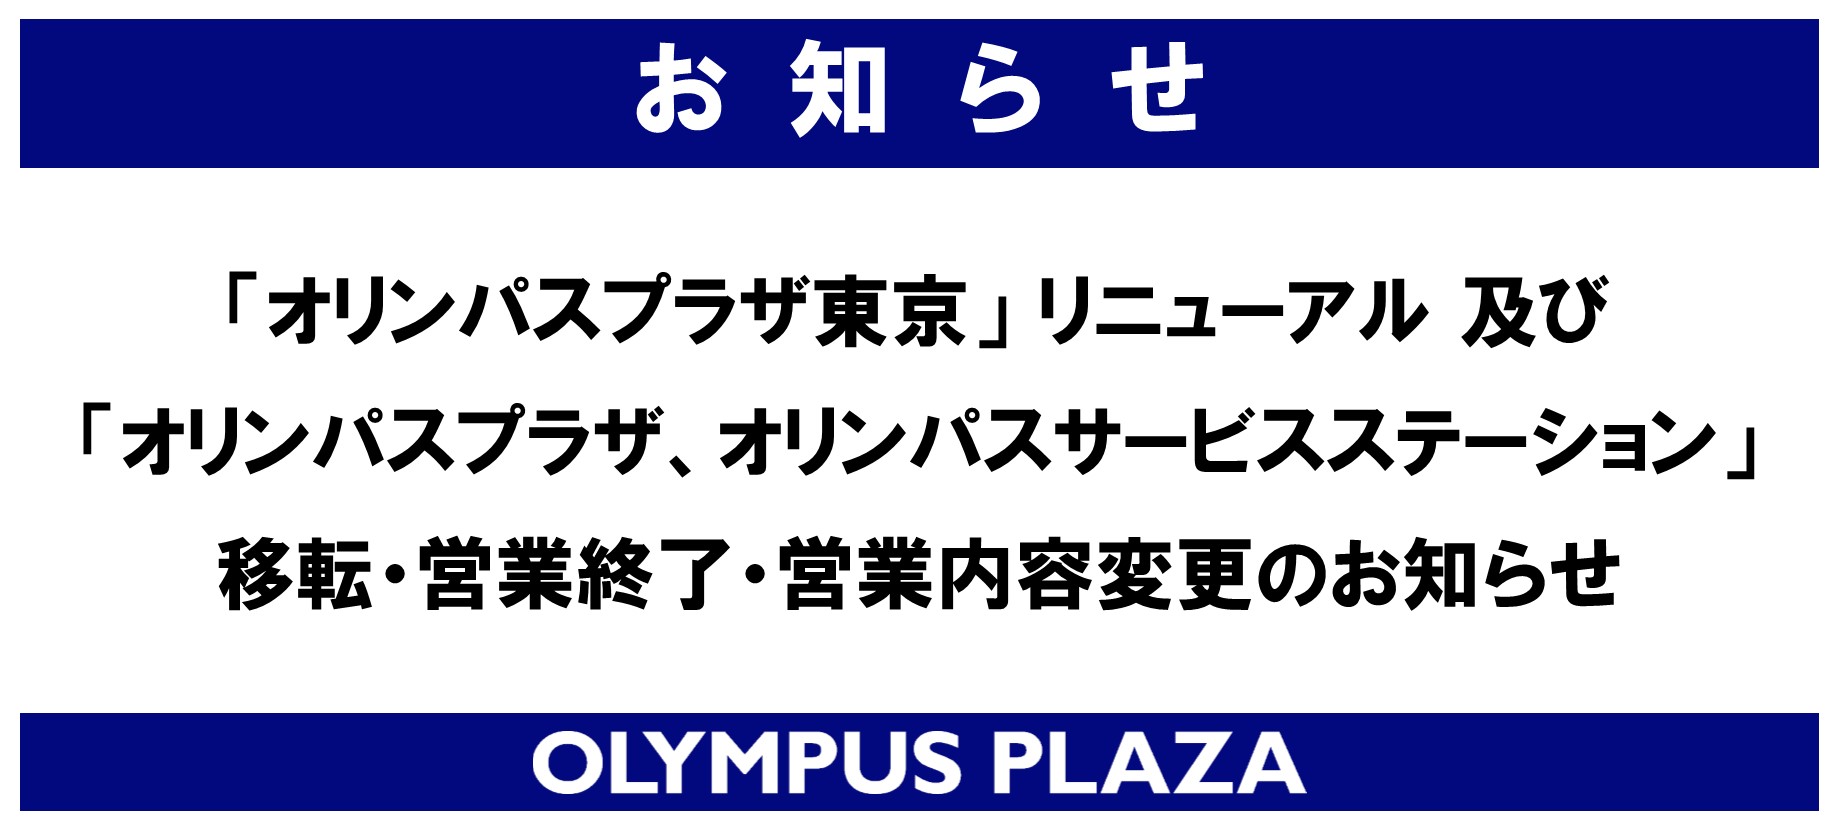 「オリンパスプラザ東京」リニューアル 及び「オリンパスプラザ大阪」、「オリンパスサービスステーション」 移転・営業終了・営業内容変更のお知らせ